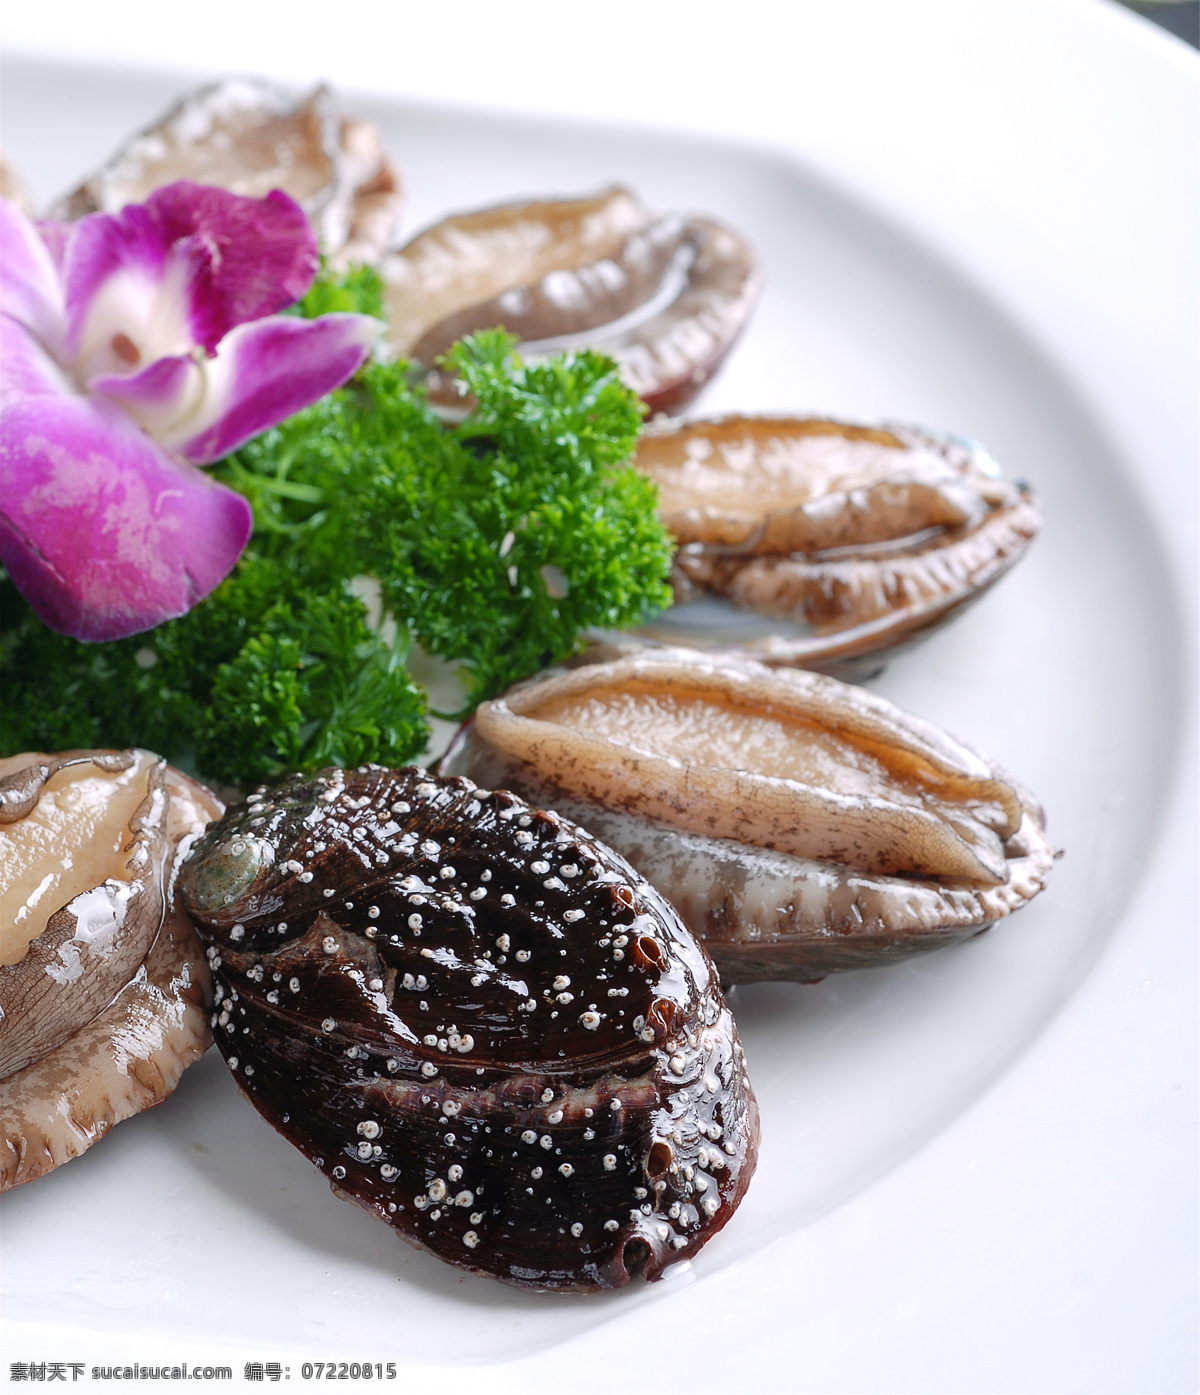 海鲜鲍鱼仔 美食 传统美食 餐饮美食 高清菜谱用图